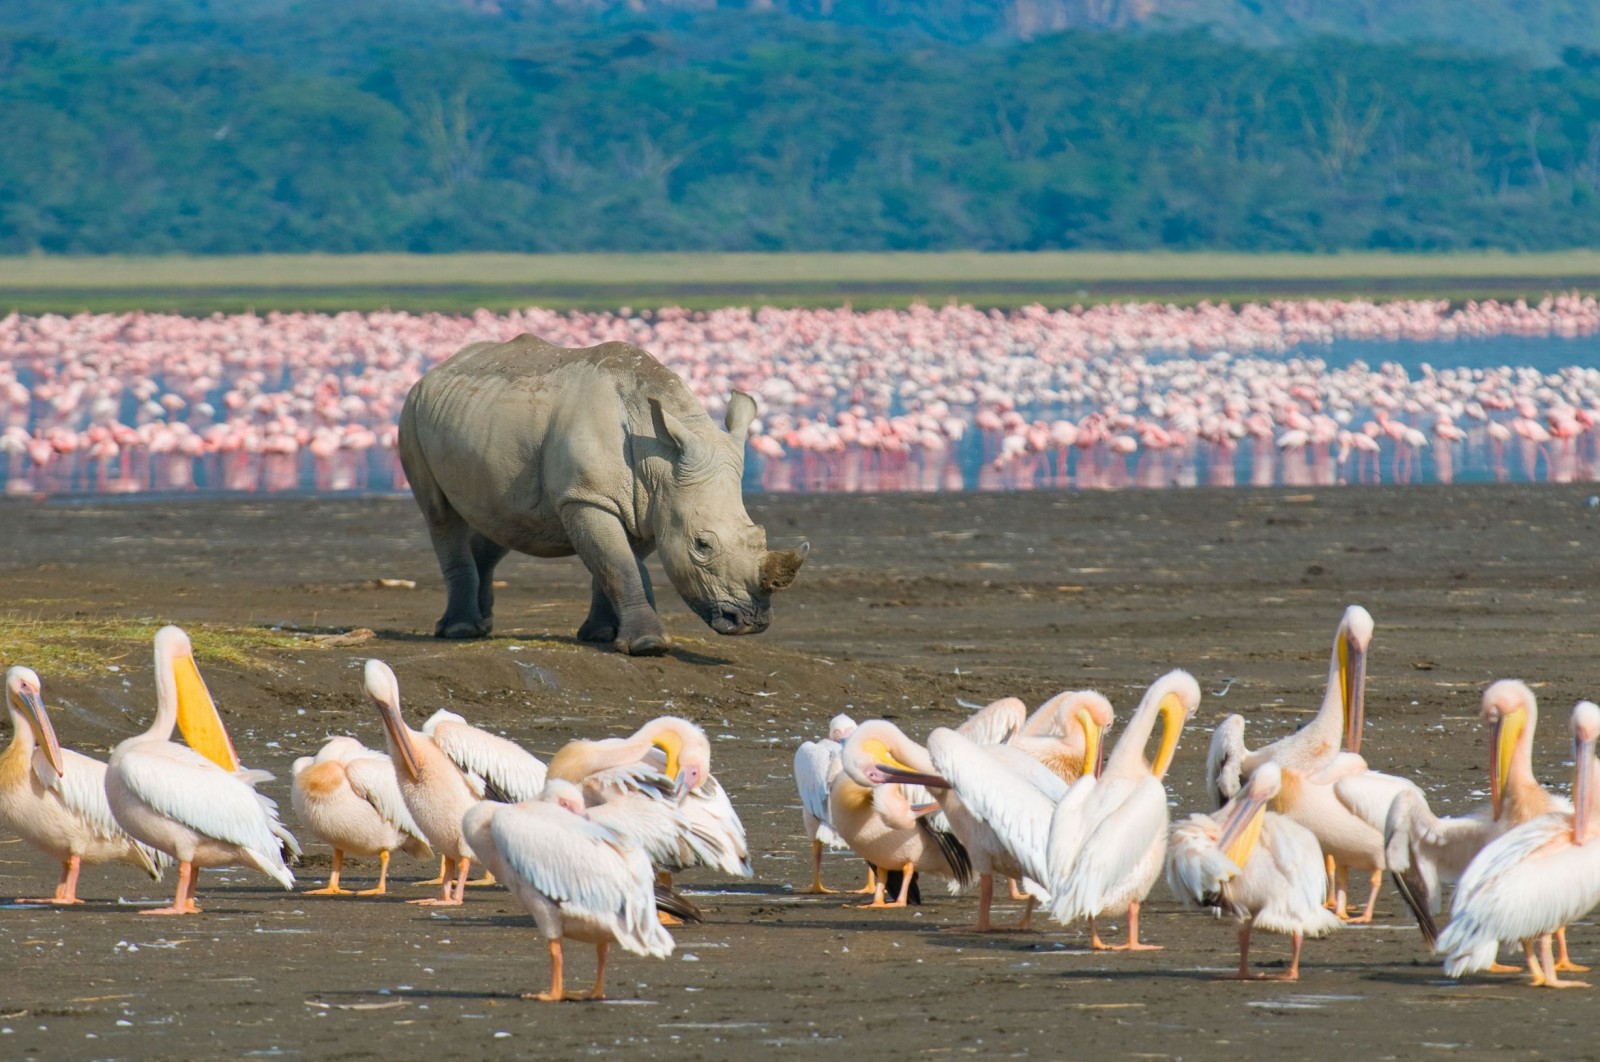 تور حیات وحش کنیا